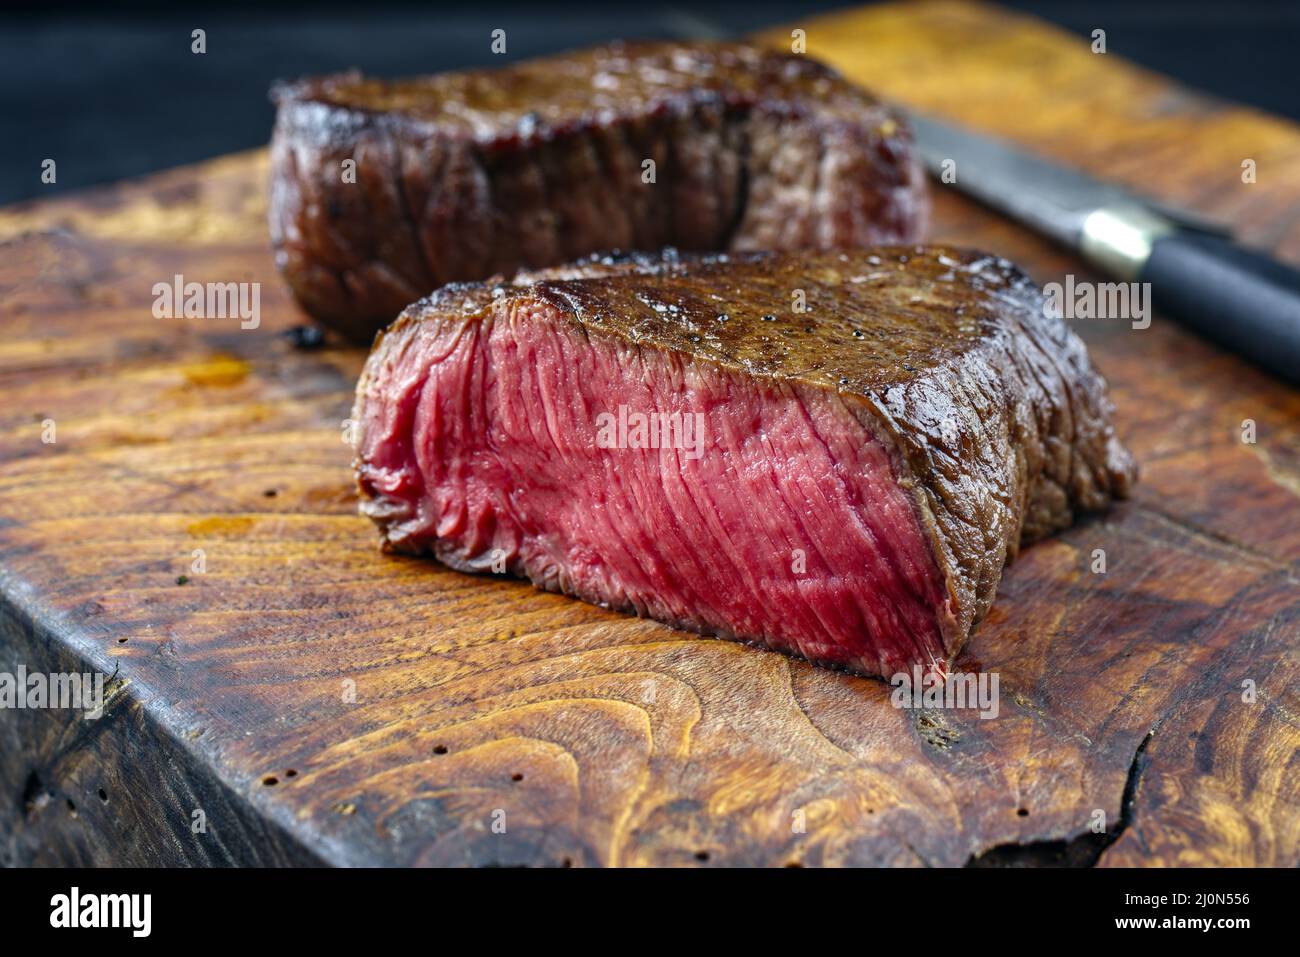 Steak traditionnel de bœuf haché sec frit servi en gros plan dans un vieux panneau rustique en bois Banque D'Images